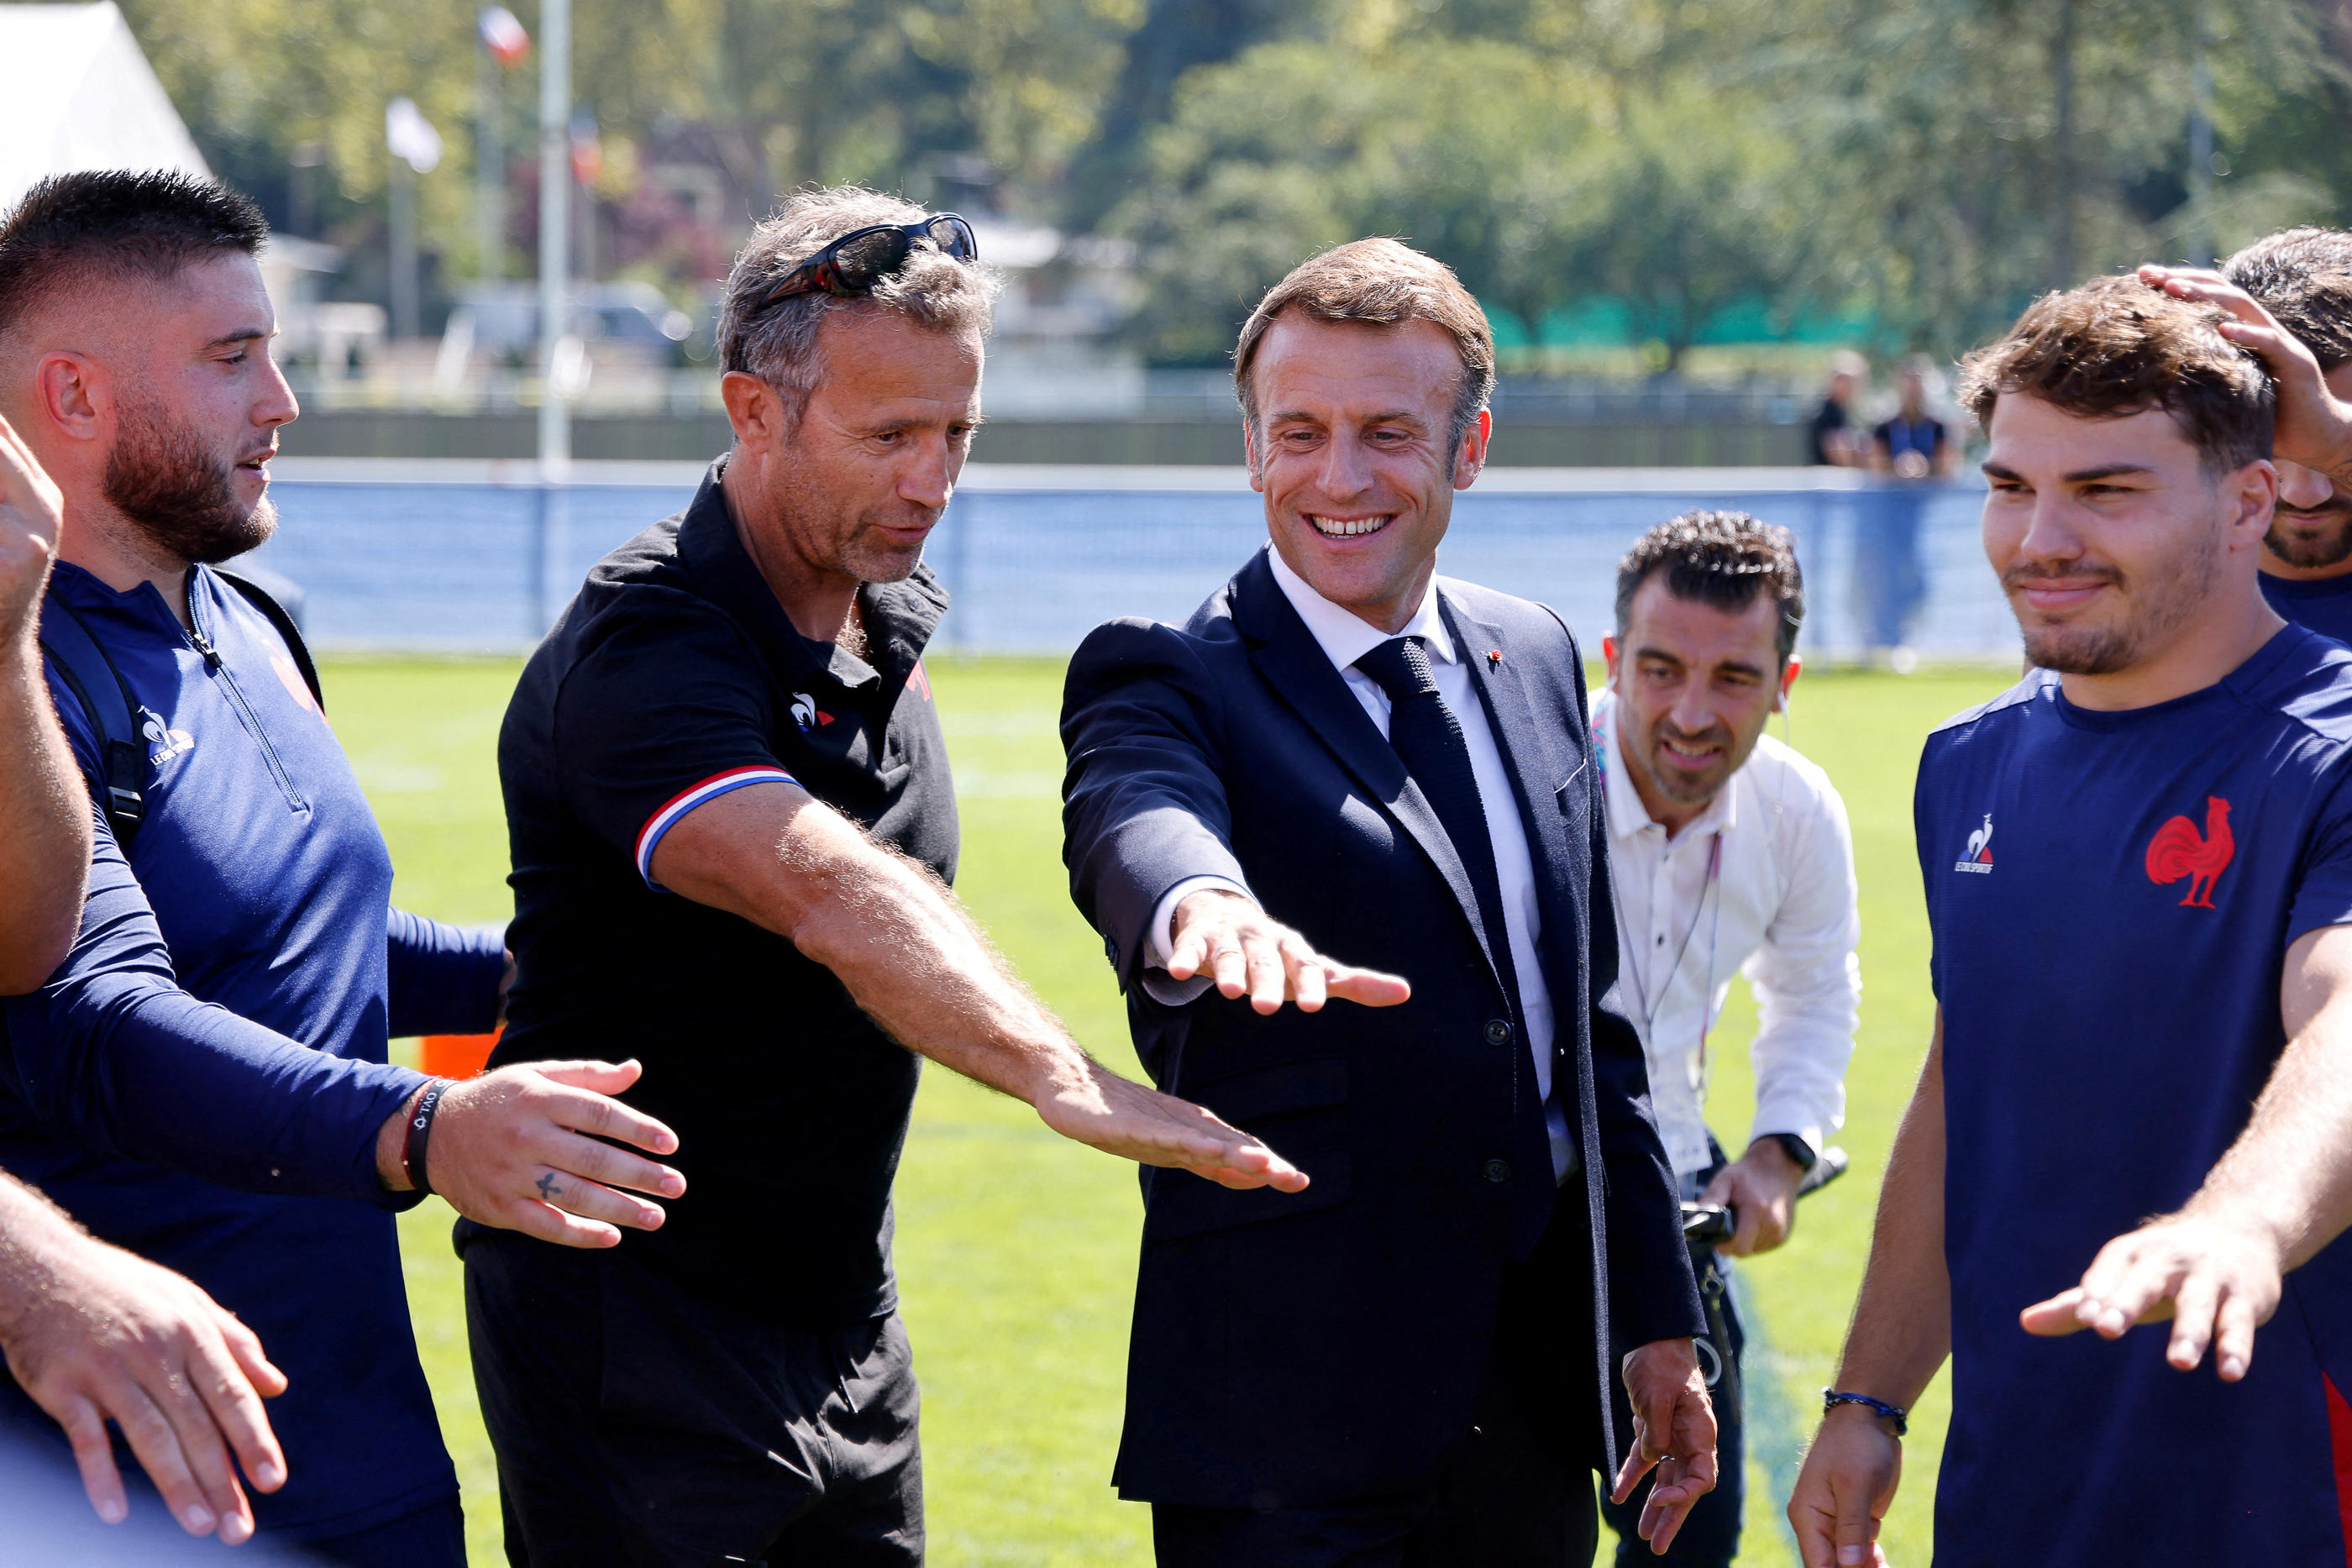 Emmanuel Macron tout sourire lundi 4 septembre au camp de base des Bleus, à Rueil-Malmaison. Reuters/Ludovic Marin